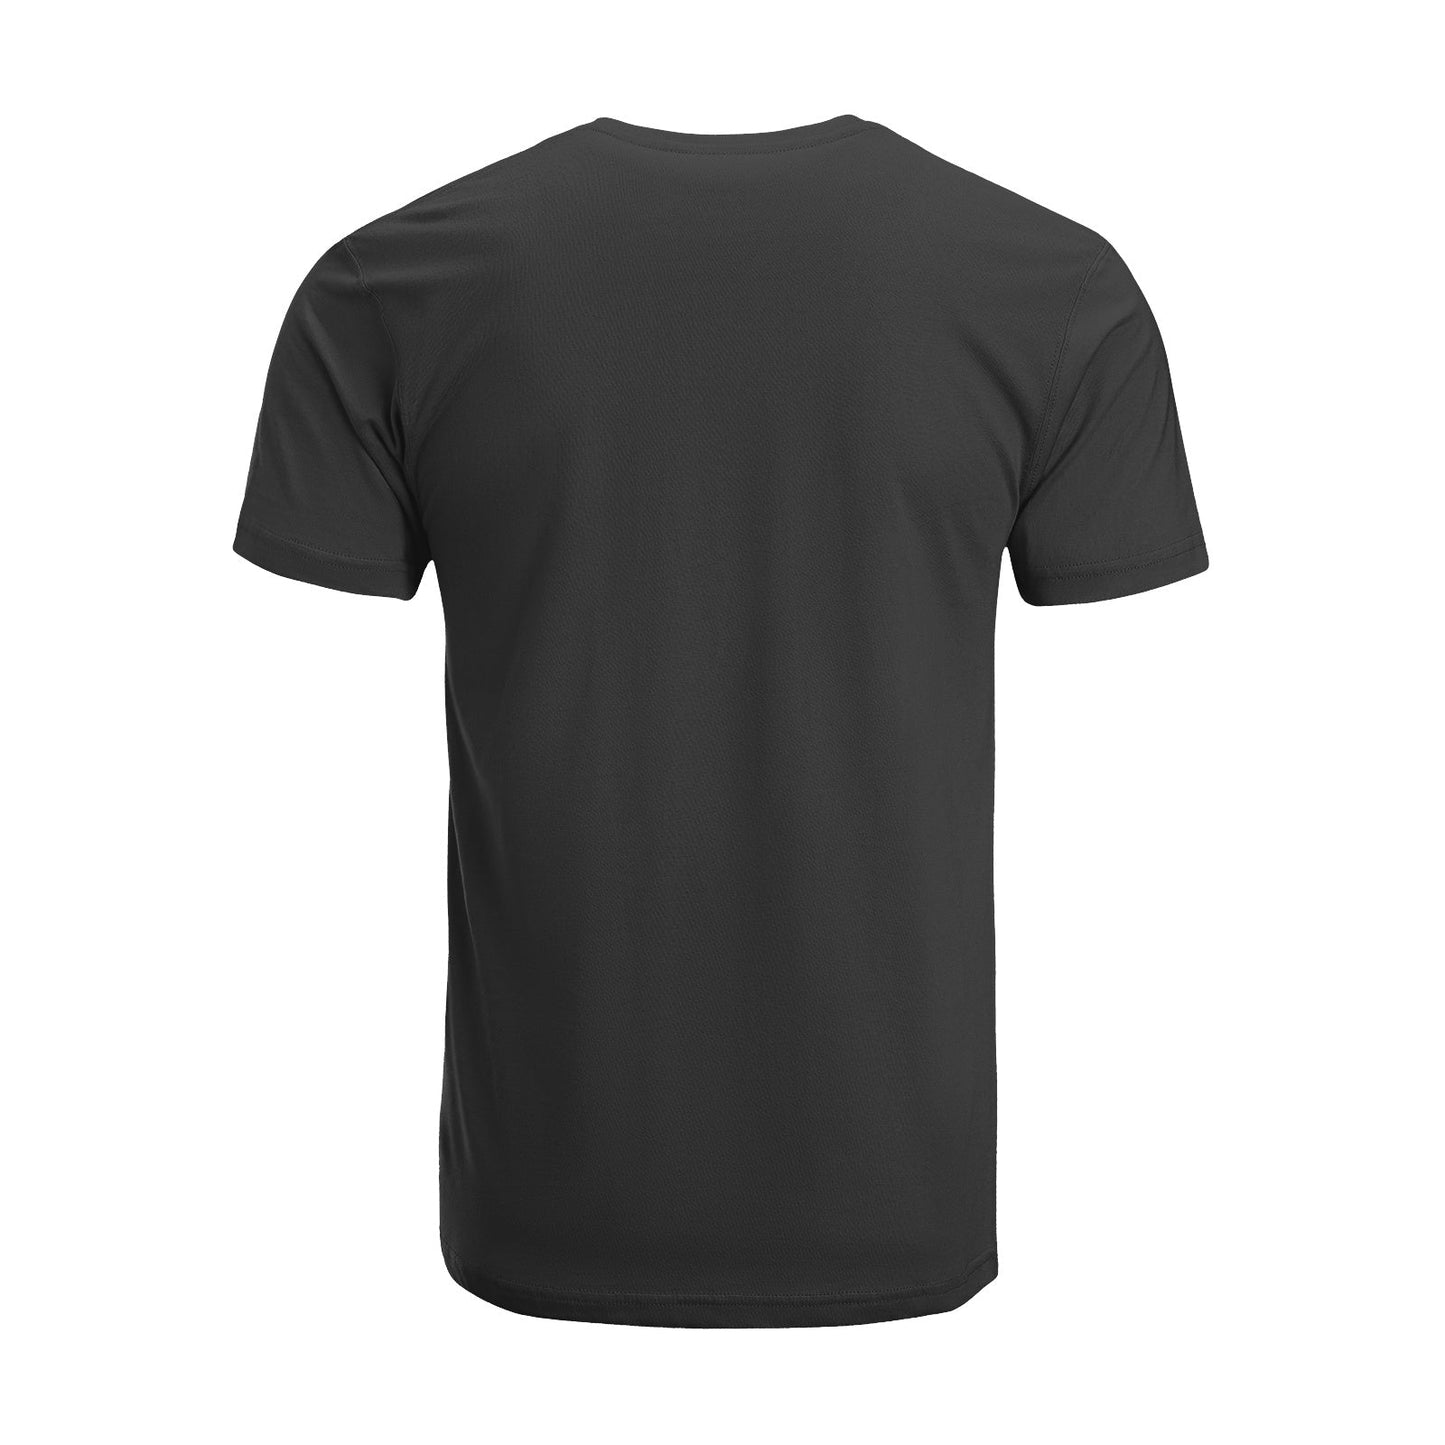 Unisex Short Sleeve Crew Neck Cotton Jersey T-Shirt TRUCK 38